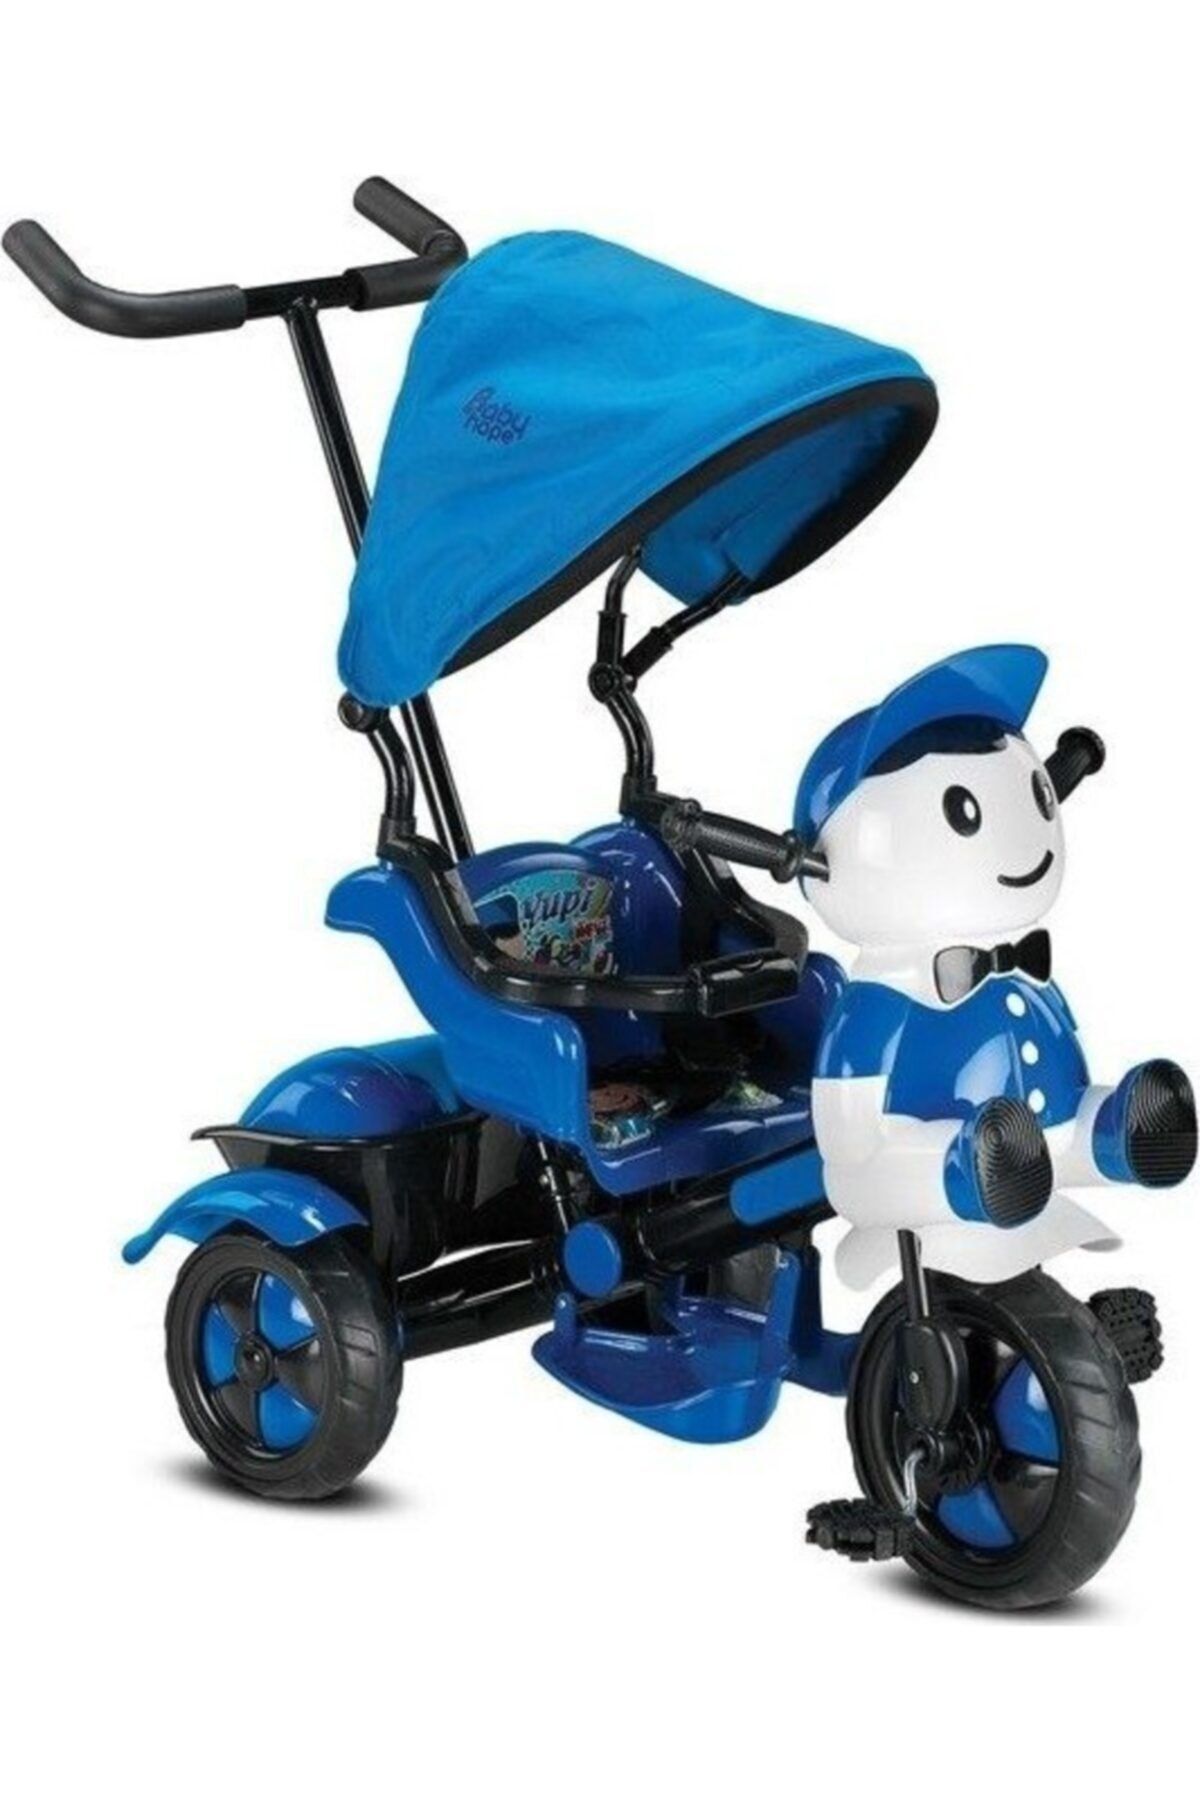 Babyhope 125 Yupi Pandaebeveyn Kontrollü Tenteli Müzikli Tricycle Üç Teker Bisiklet -Mavi